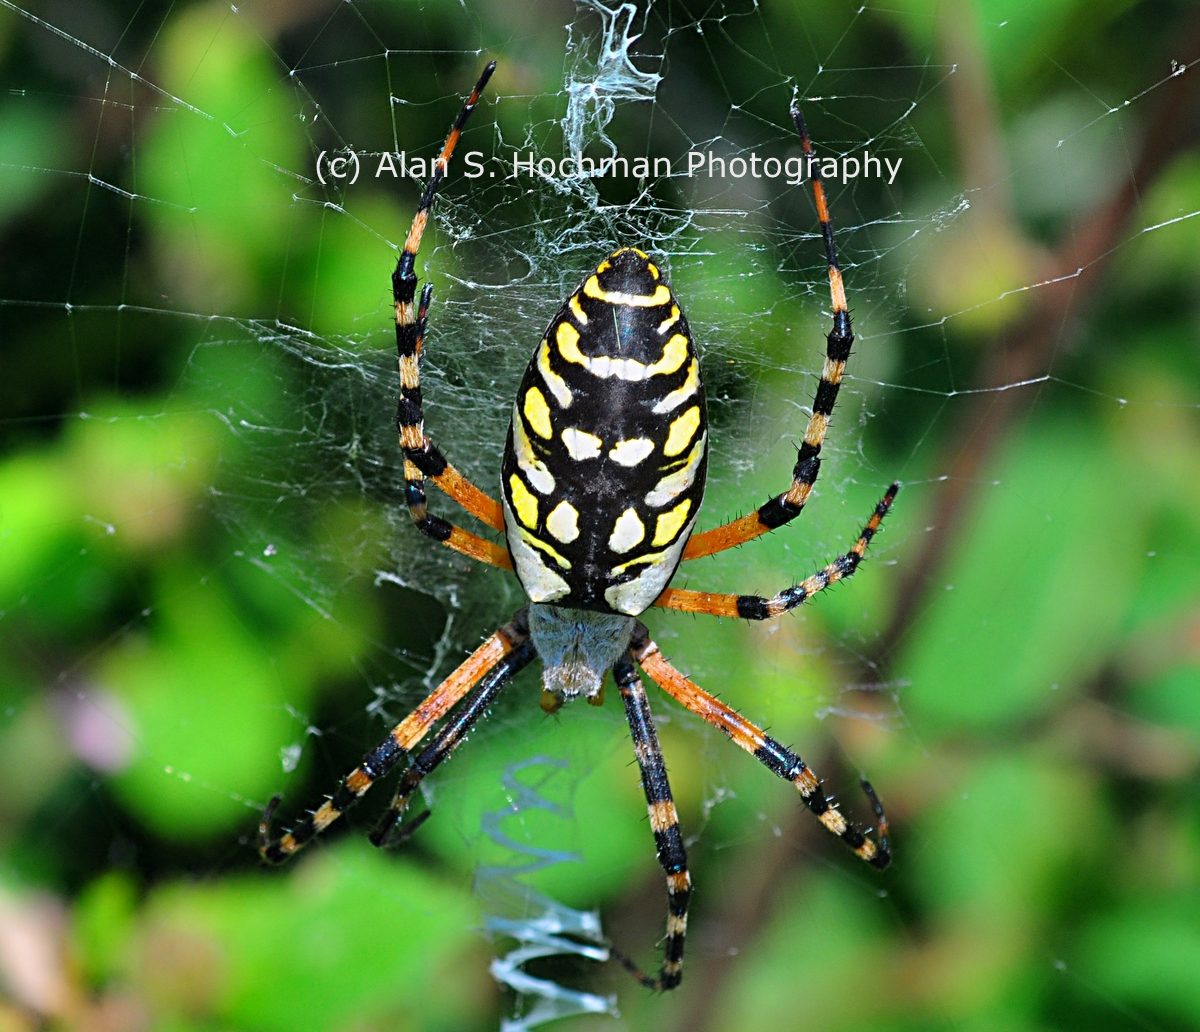 "Black and Yellow Garden Spider (Argiope aurantia)"